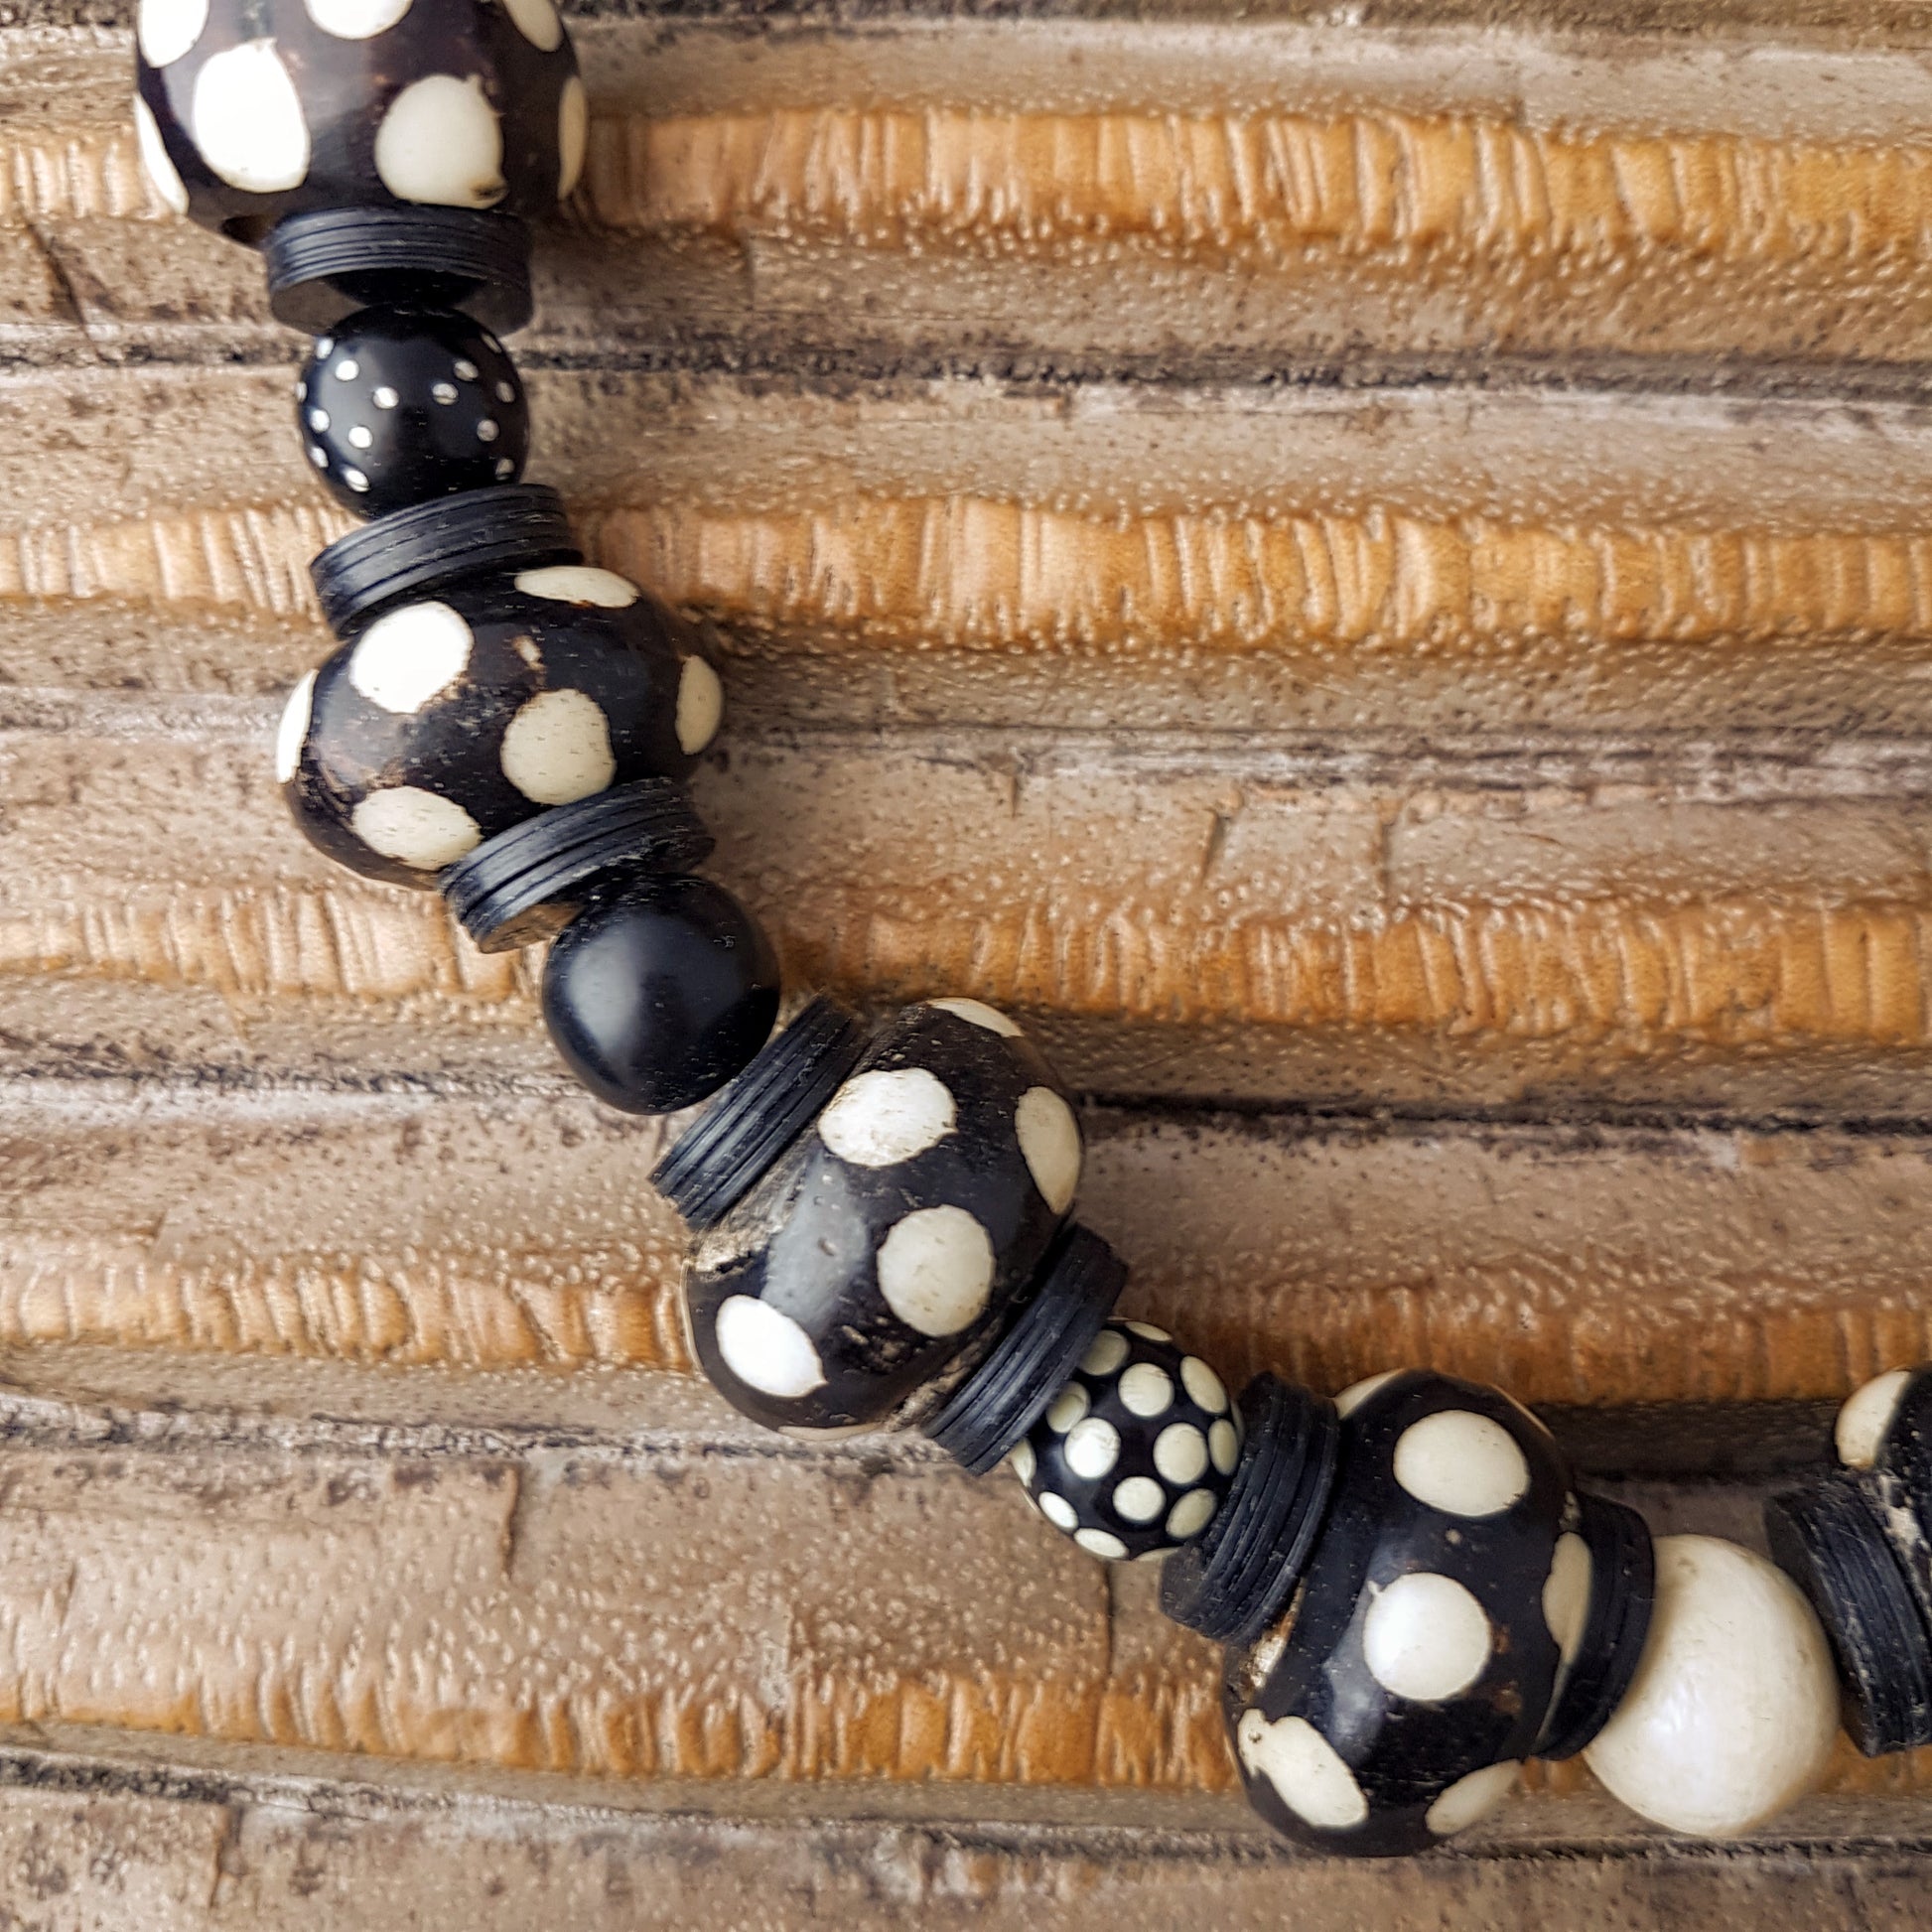 Handgearbeitete Kette mit gepunkteten gebatikten Beinperlen aus Afrika, schwarzen afrikanischen Bakelitscheiben und Perlen aus Glas, Muschel, Horn und Ebenholz mit Silberverschluss